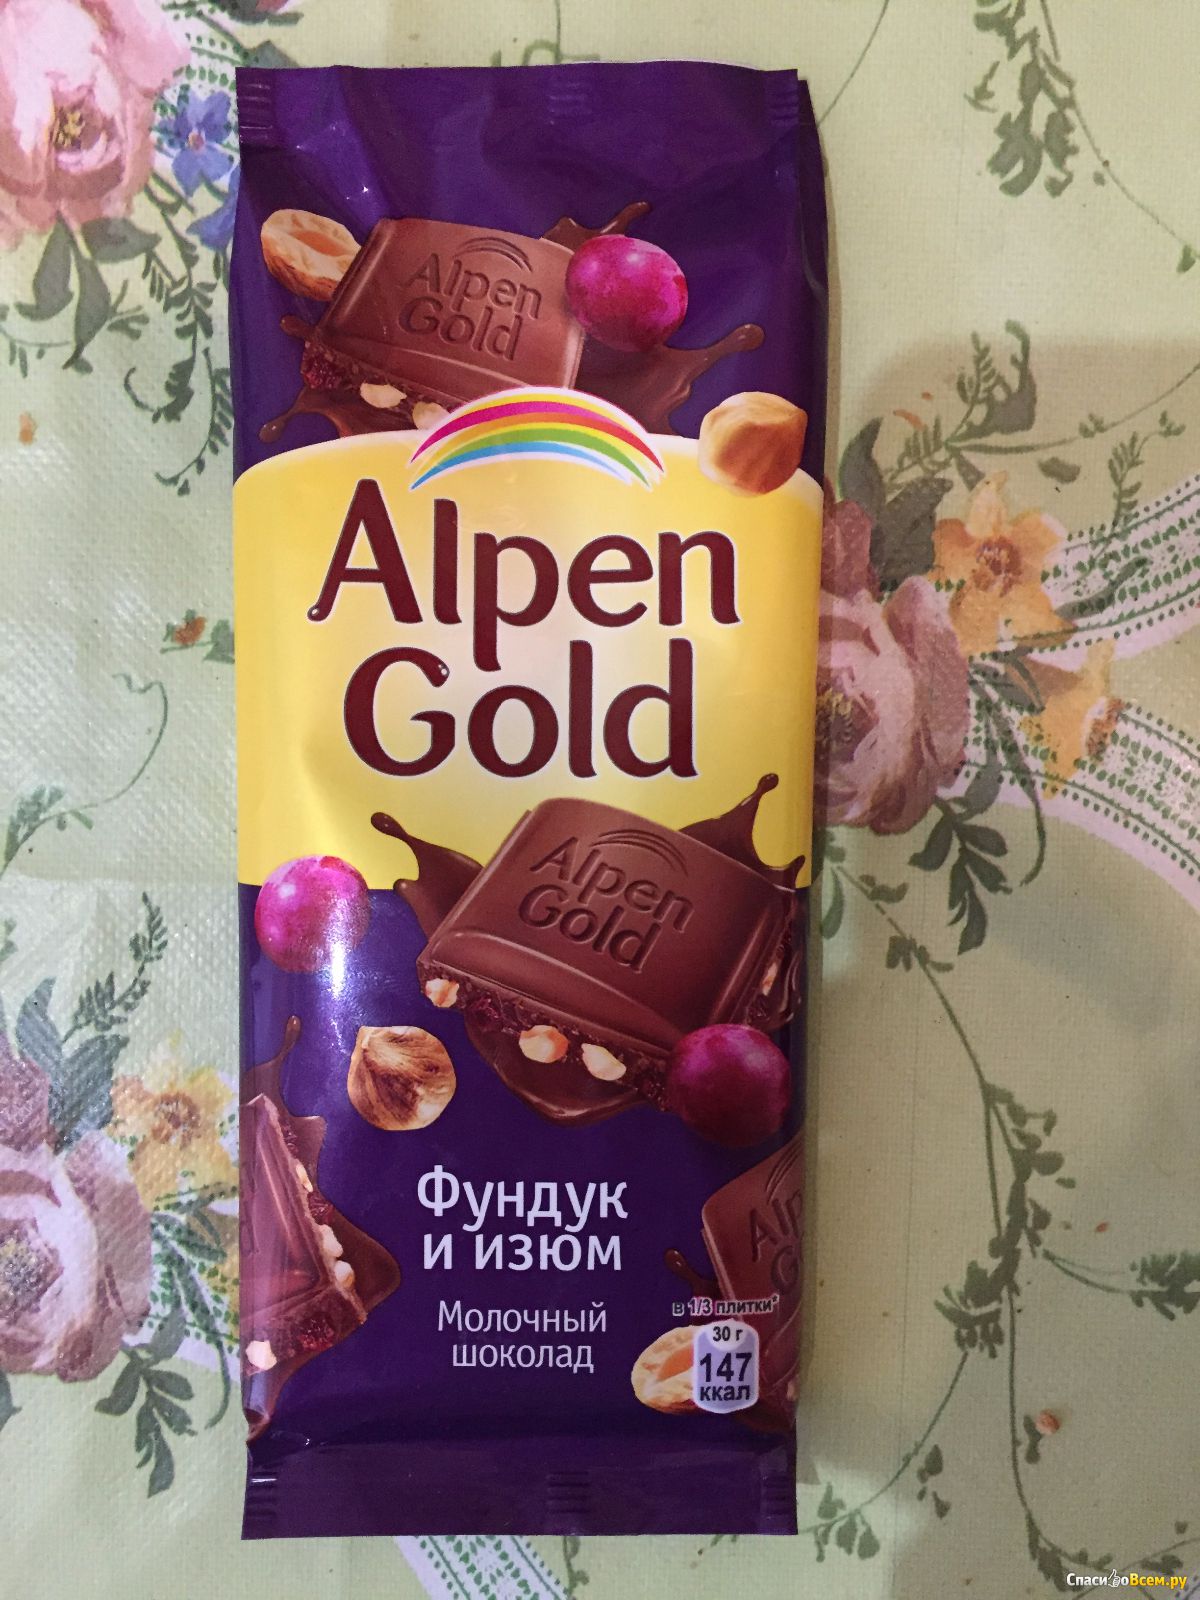 Шоколадка изюм орехи. Фиолетовая шоколадка Альпен Гольд. Альпен Гольд шоколад фиолетовый. Шоколад альпенл годь фиолктоыый. Шоколад Альпен Гольд фундук и Изюм.